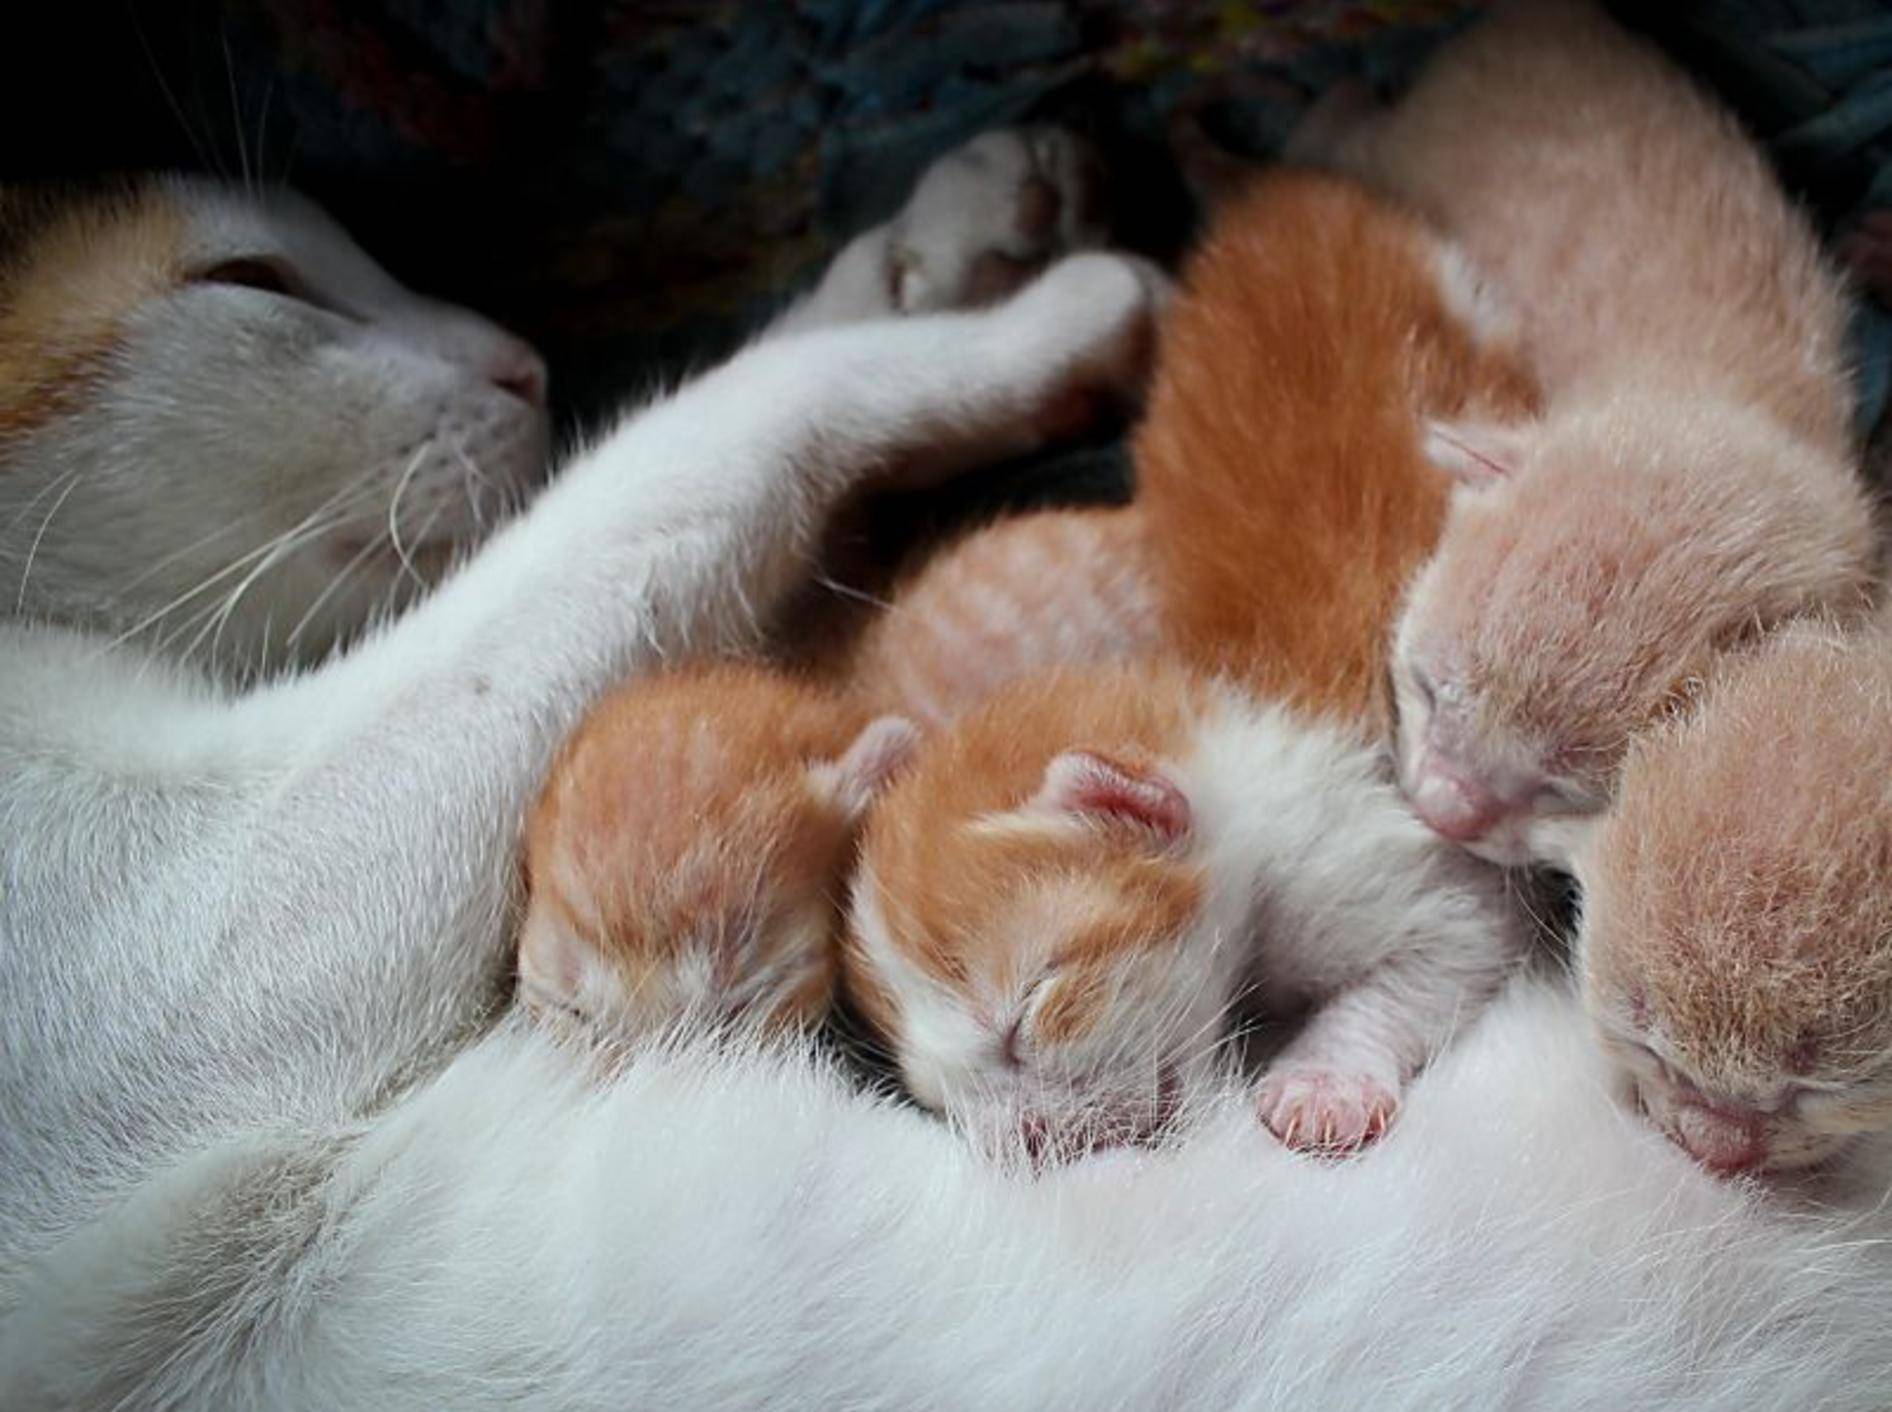 Schlafen, kuscheln, trinken: Diese Katzenbabys müssen noch groß und stark werden – Bild: Shutterstock / Grey Carnation